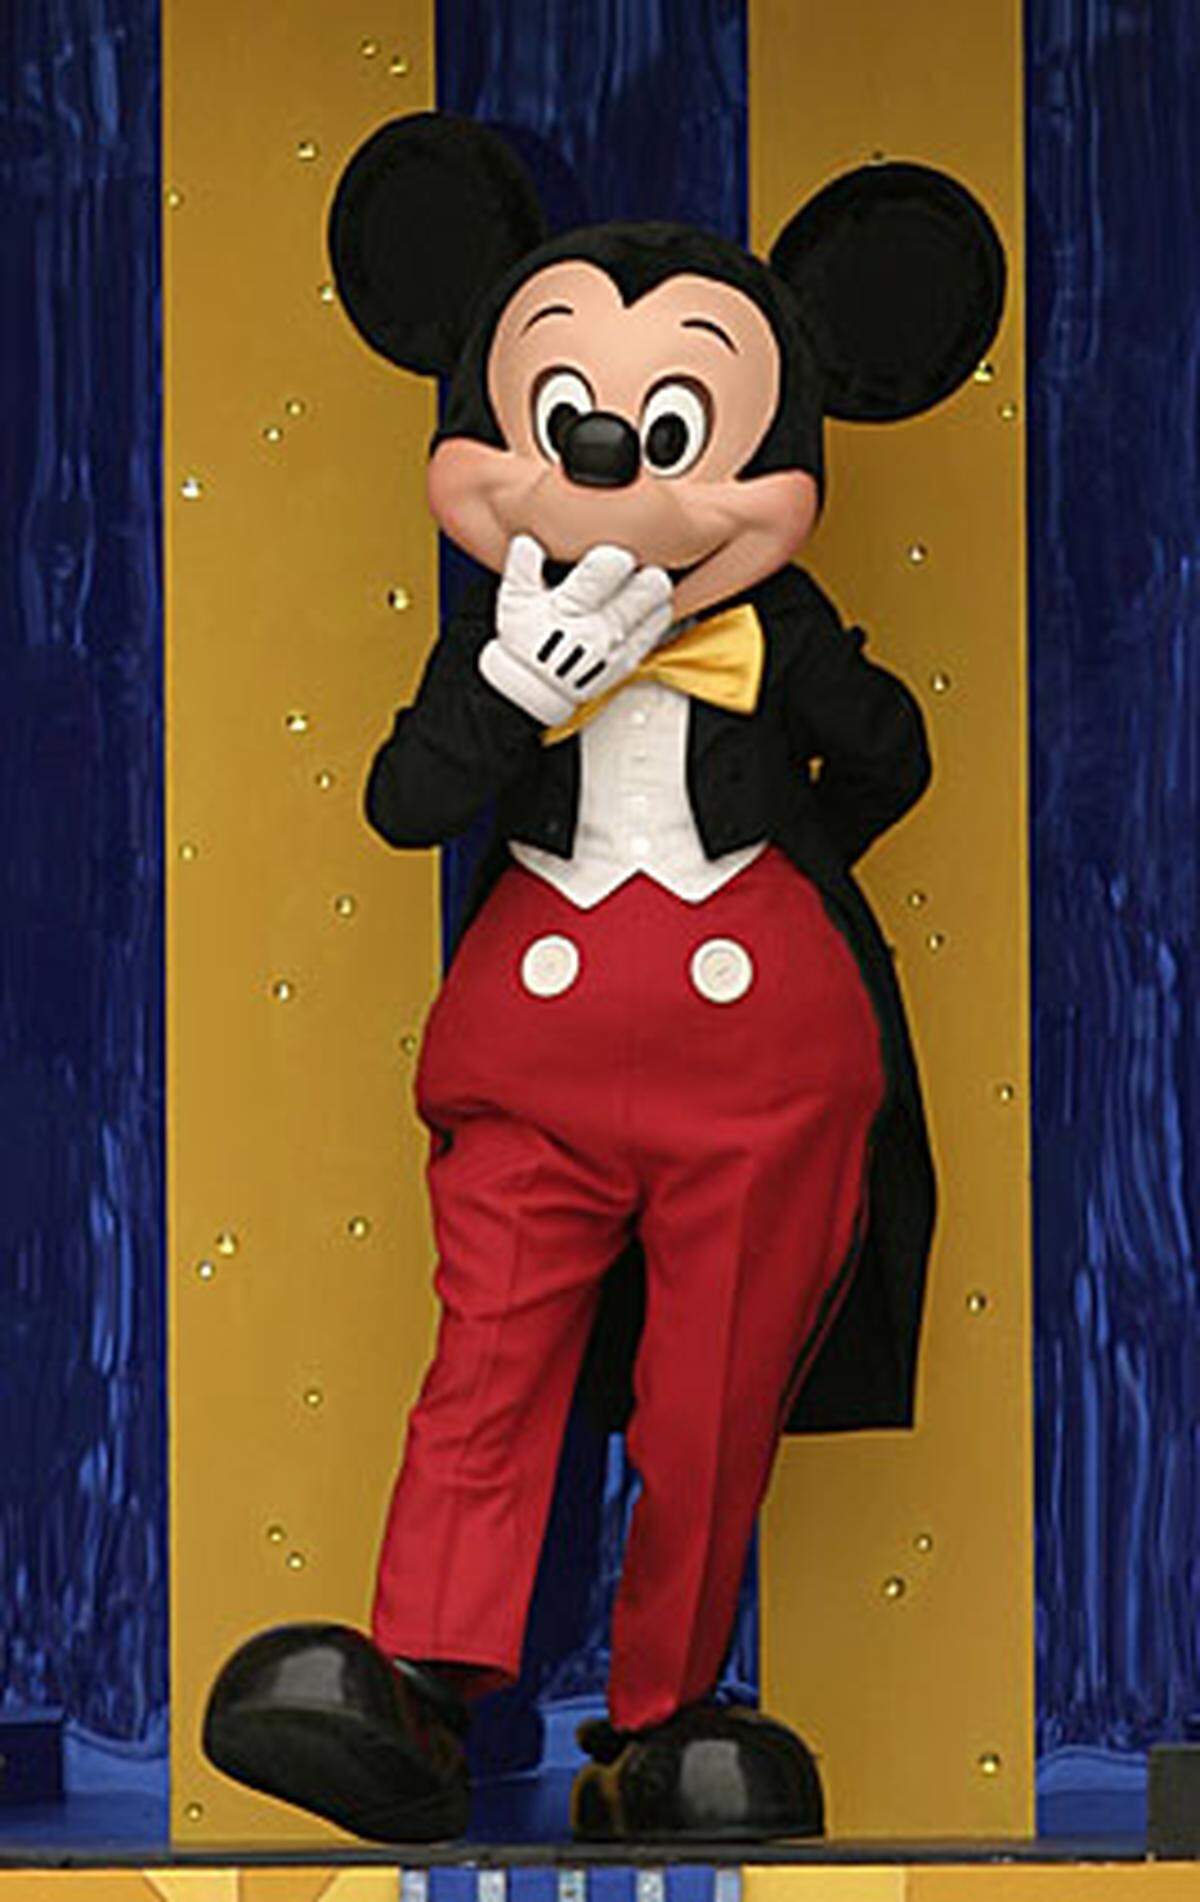 "Ich war also allein und hatte nichts", erzählte Disney später. "Aber ich hatte diese Maus im Hinterkopf. Eine Maus hat einen sympathischen Charakter, auch wenn sich die meisten Leute - einschließlich mir - etwas vor ihr fürchten." Den zunächst geplanten Namen Mortimer Mouse fand Disneys Frau Lillian allerdings zu altmodisch. So wurde die Figur schließlich Mickey Mouse getauft - auf Deutsch: Micky Maus.